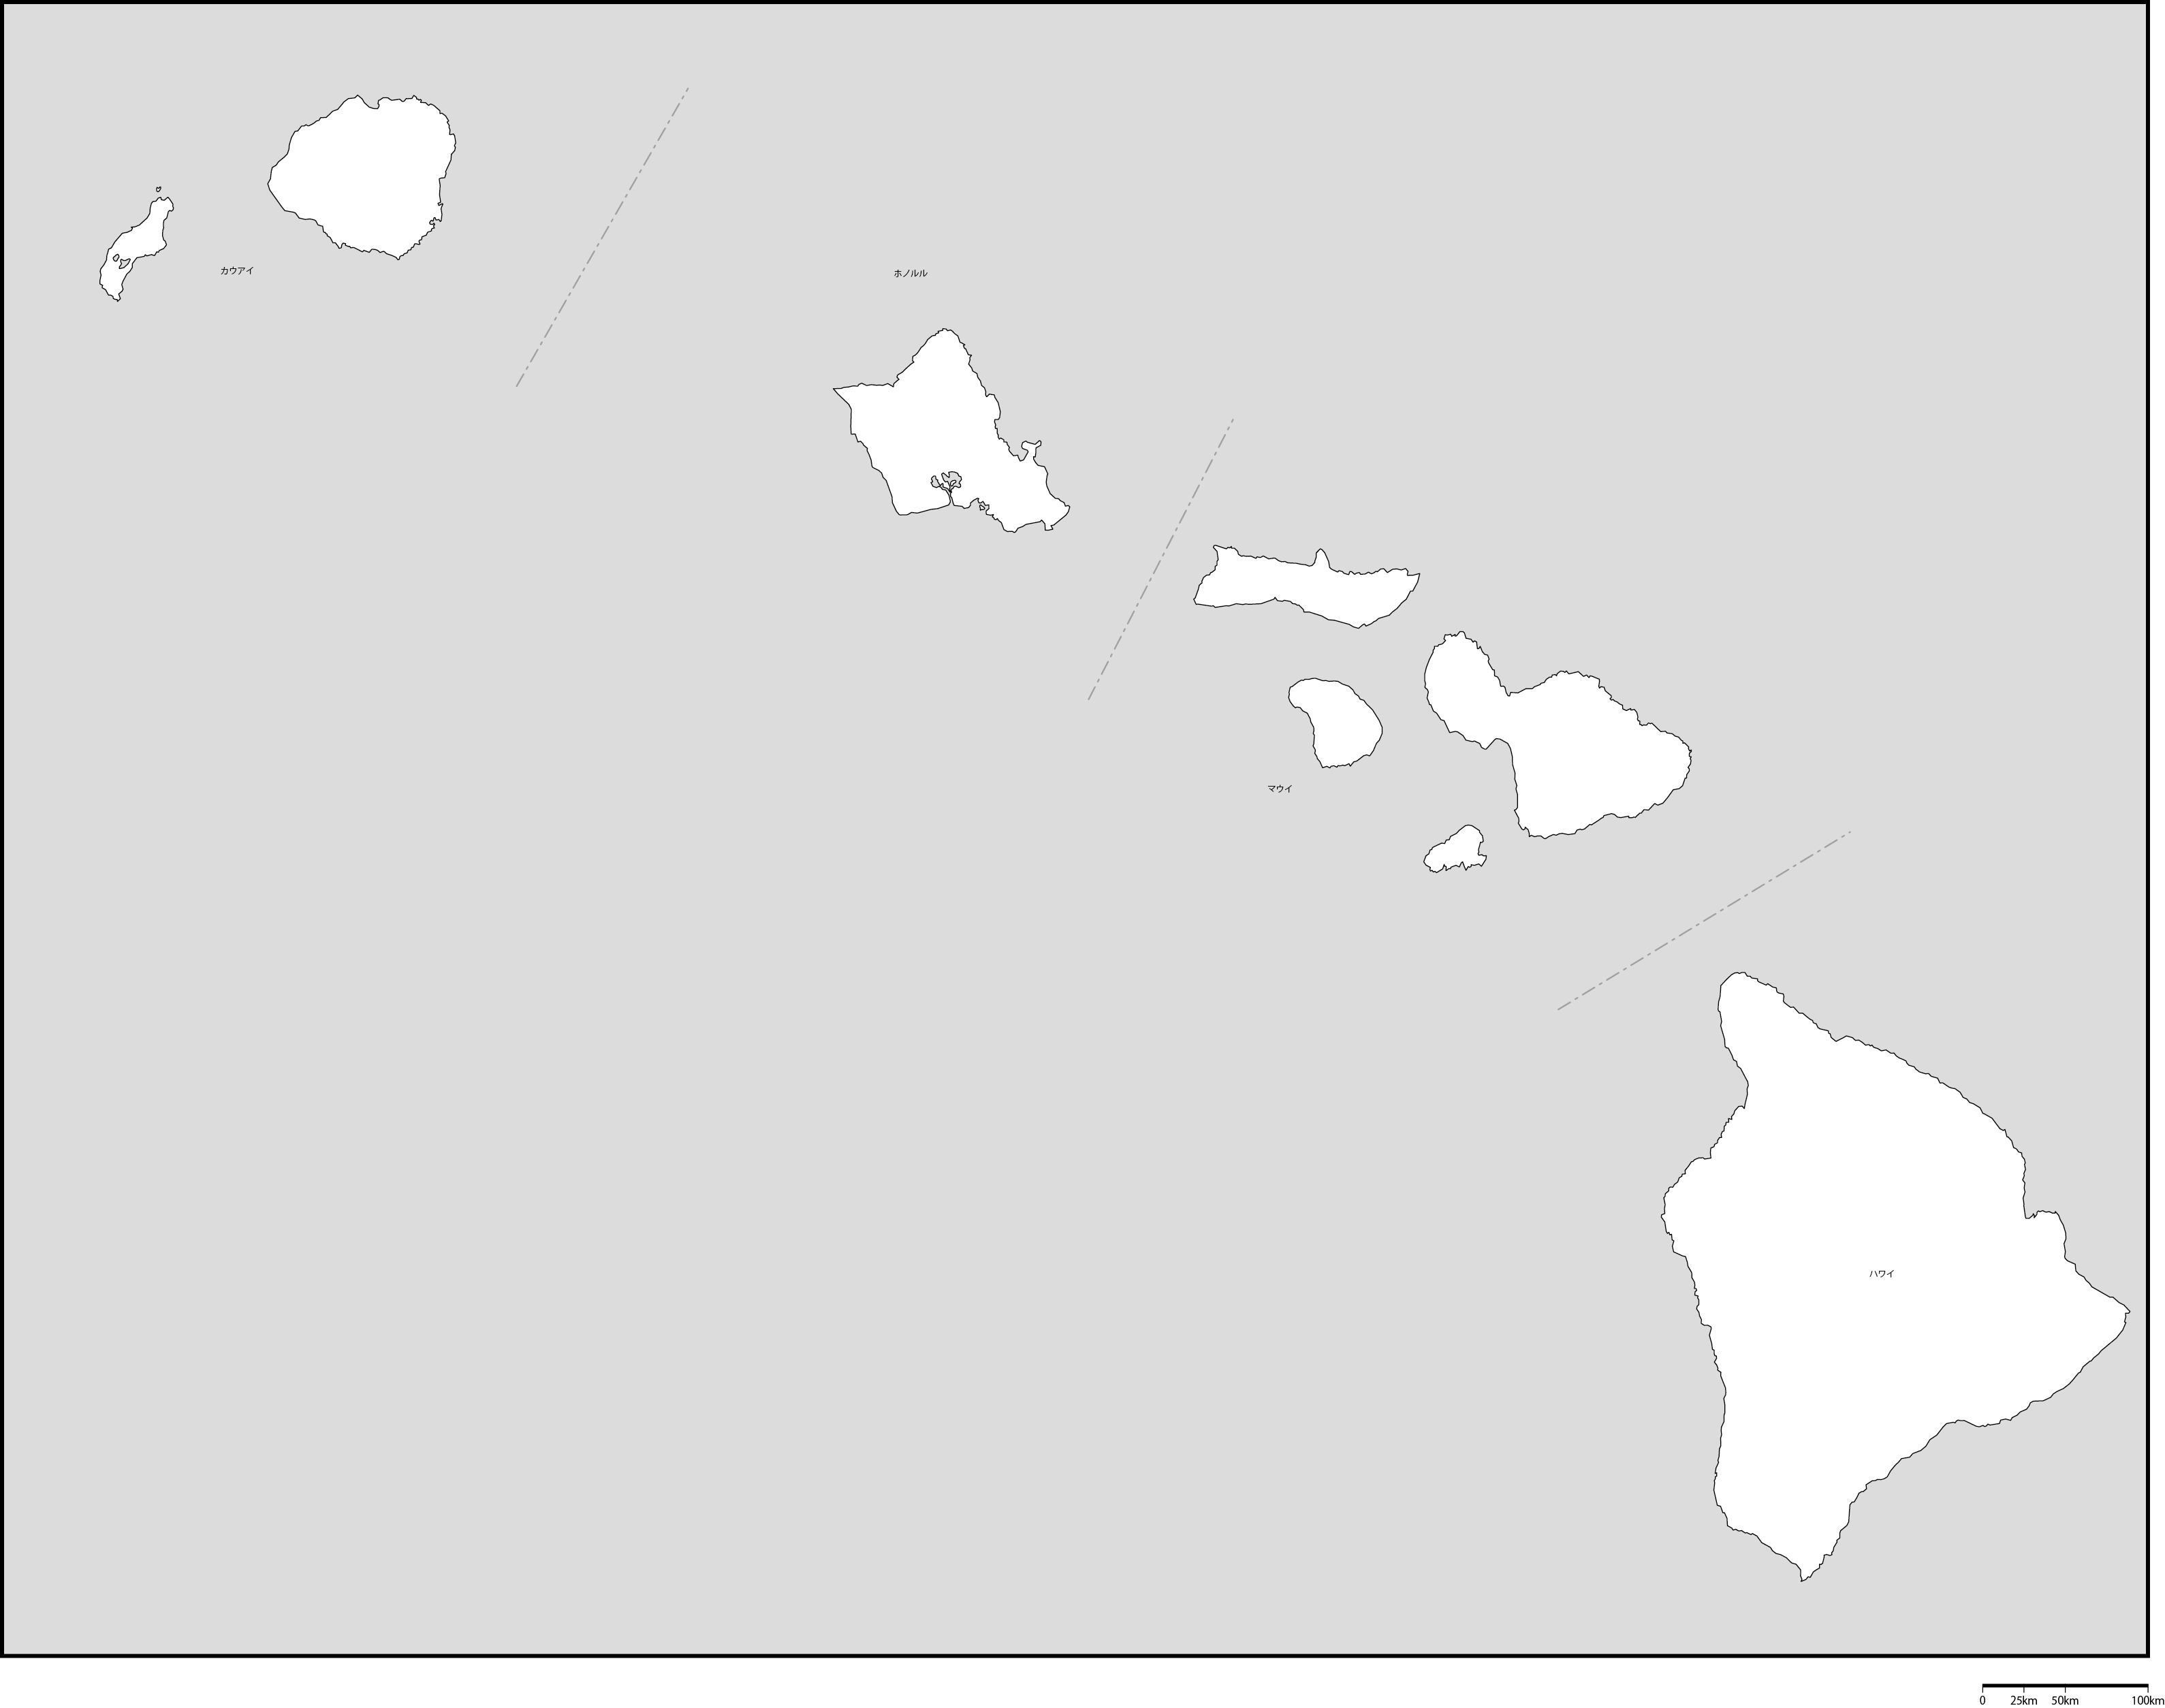 ハワイ州郡分け地図郡名あり(日本語)フリーデータの画像